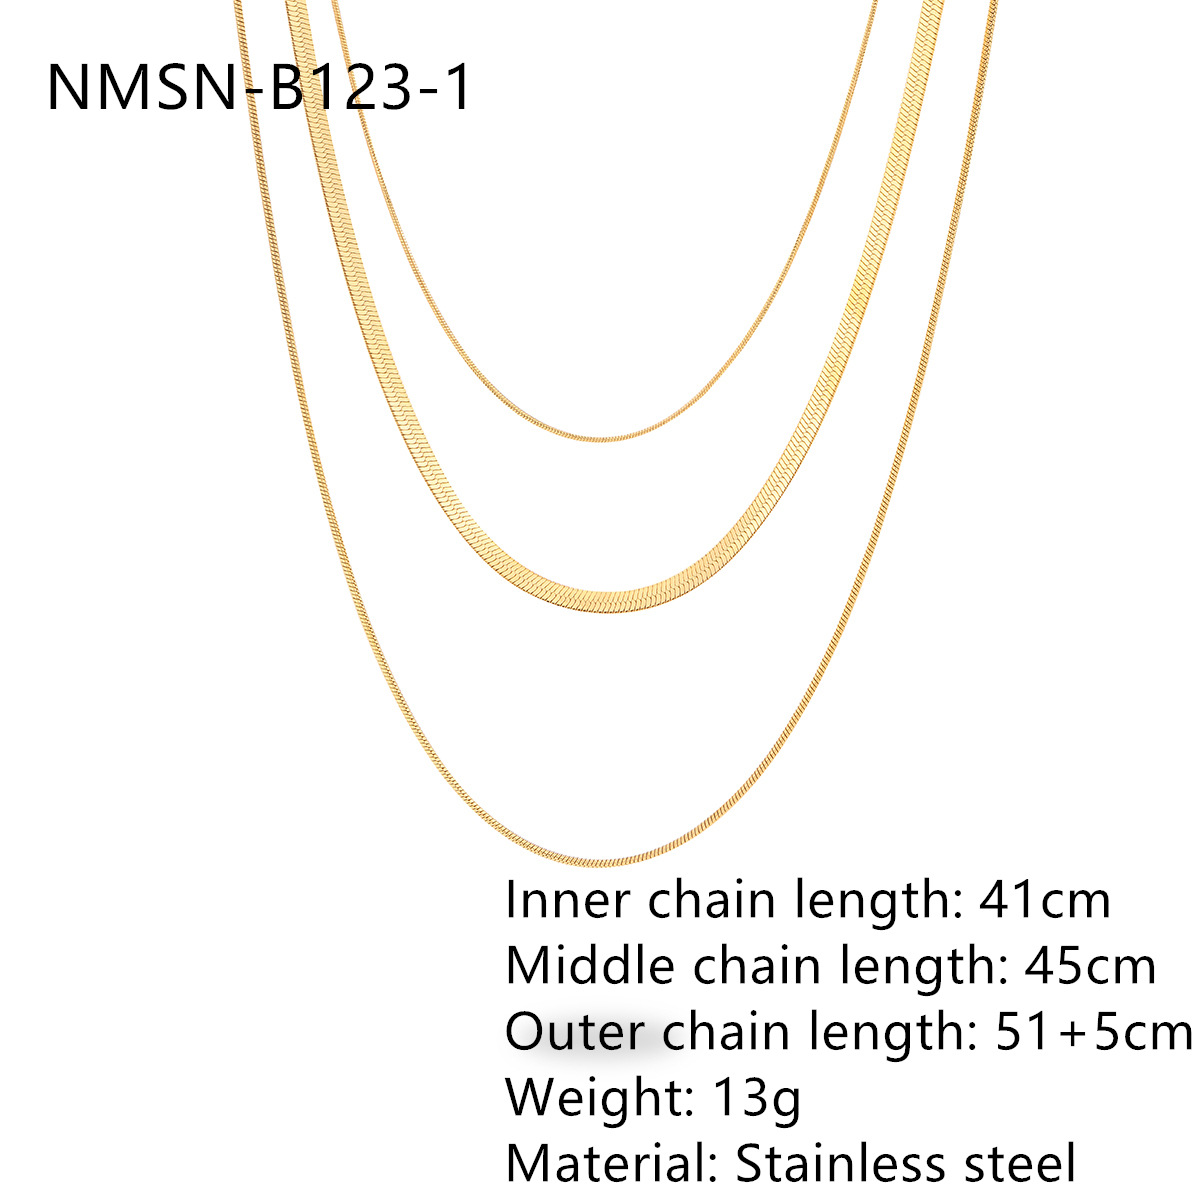 NMSN-B123-1